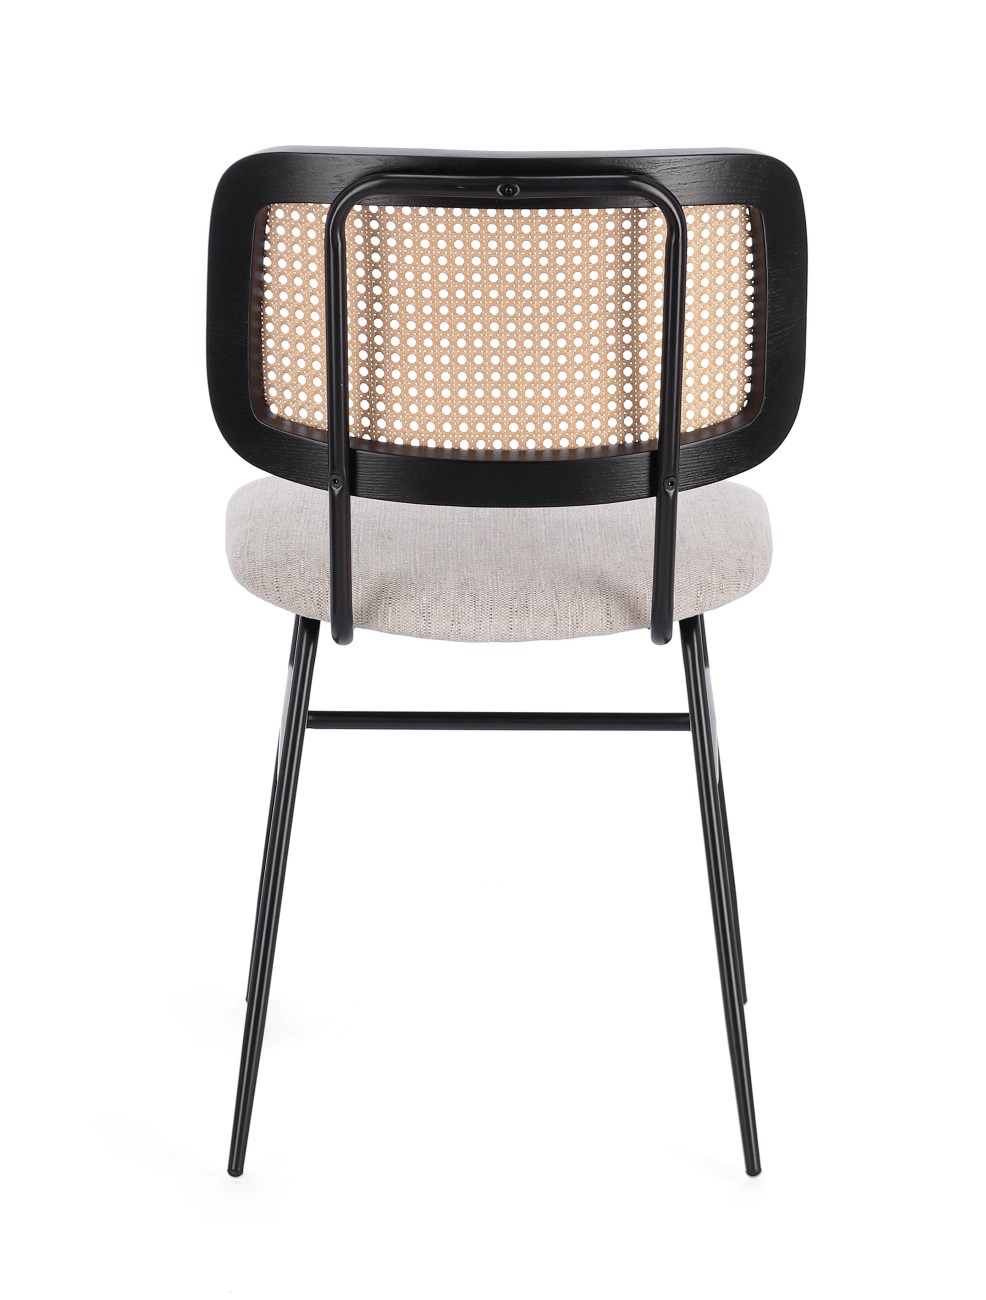 Der Esszimmerstuhl Glenna überzeugt mit seinem modernen Stil. Gefertigt wurde er aus Stoff, welcher einen natürlichen Farbton besitzt. Das Gestell ist aus Metall und hat eine schwarze Farbe. Der Stuhl besitzt eine Sitzhöhe von 48 cm.